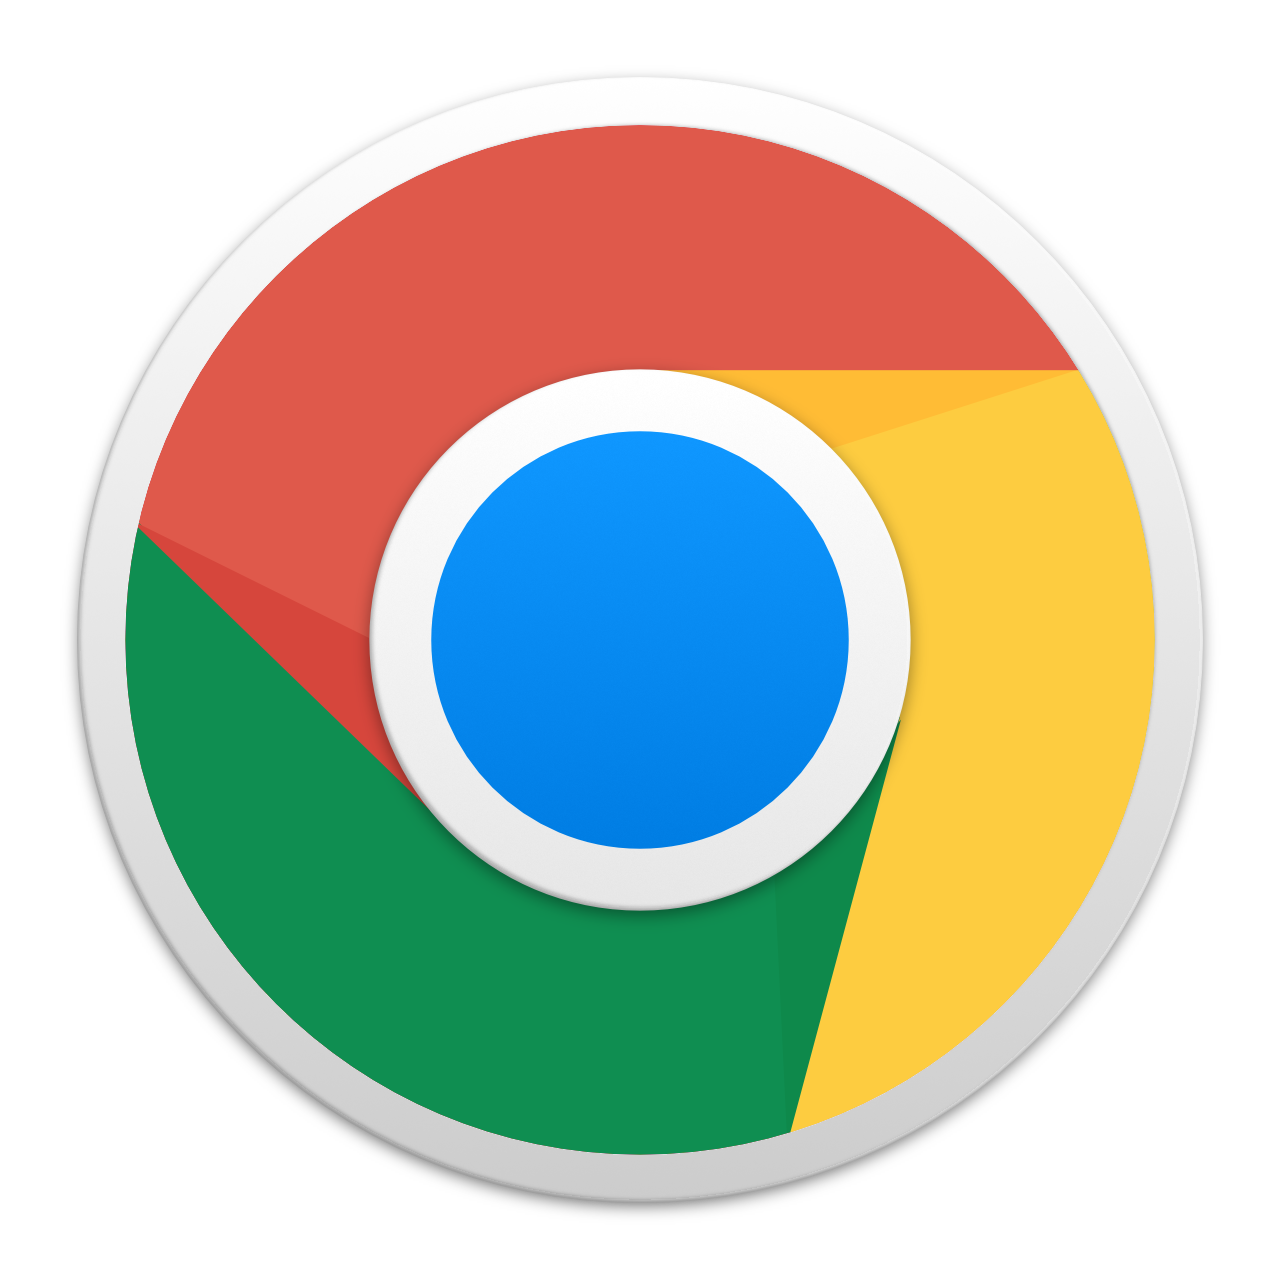 google chrome app for desktop free download